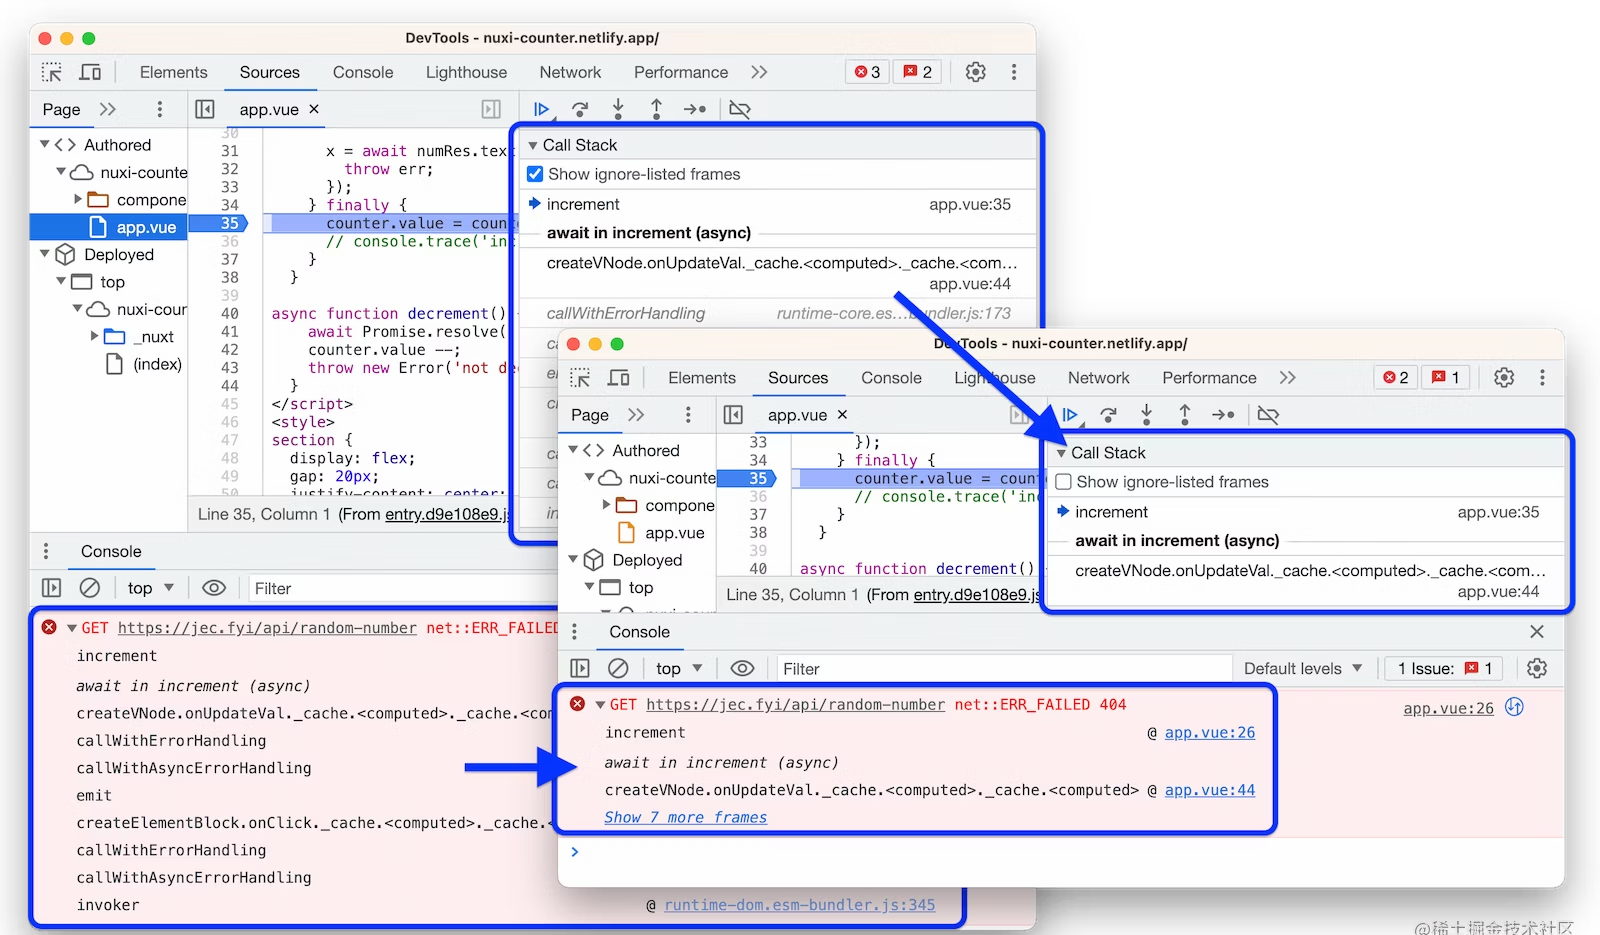 Chrome113 支持修改 Header 和隐藏错误堆栈